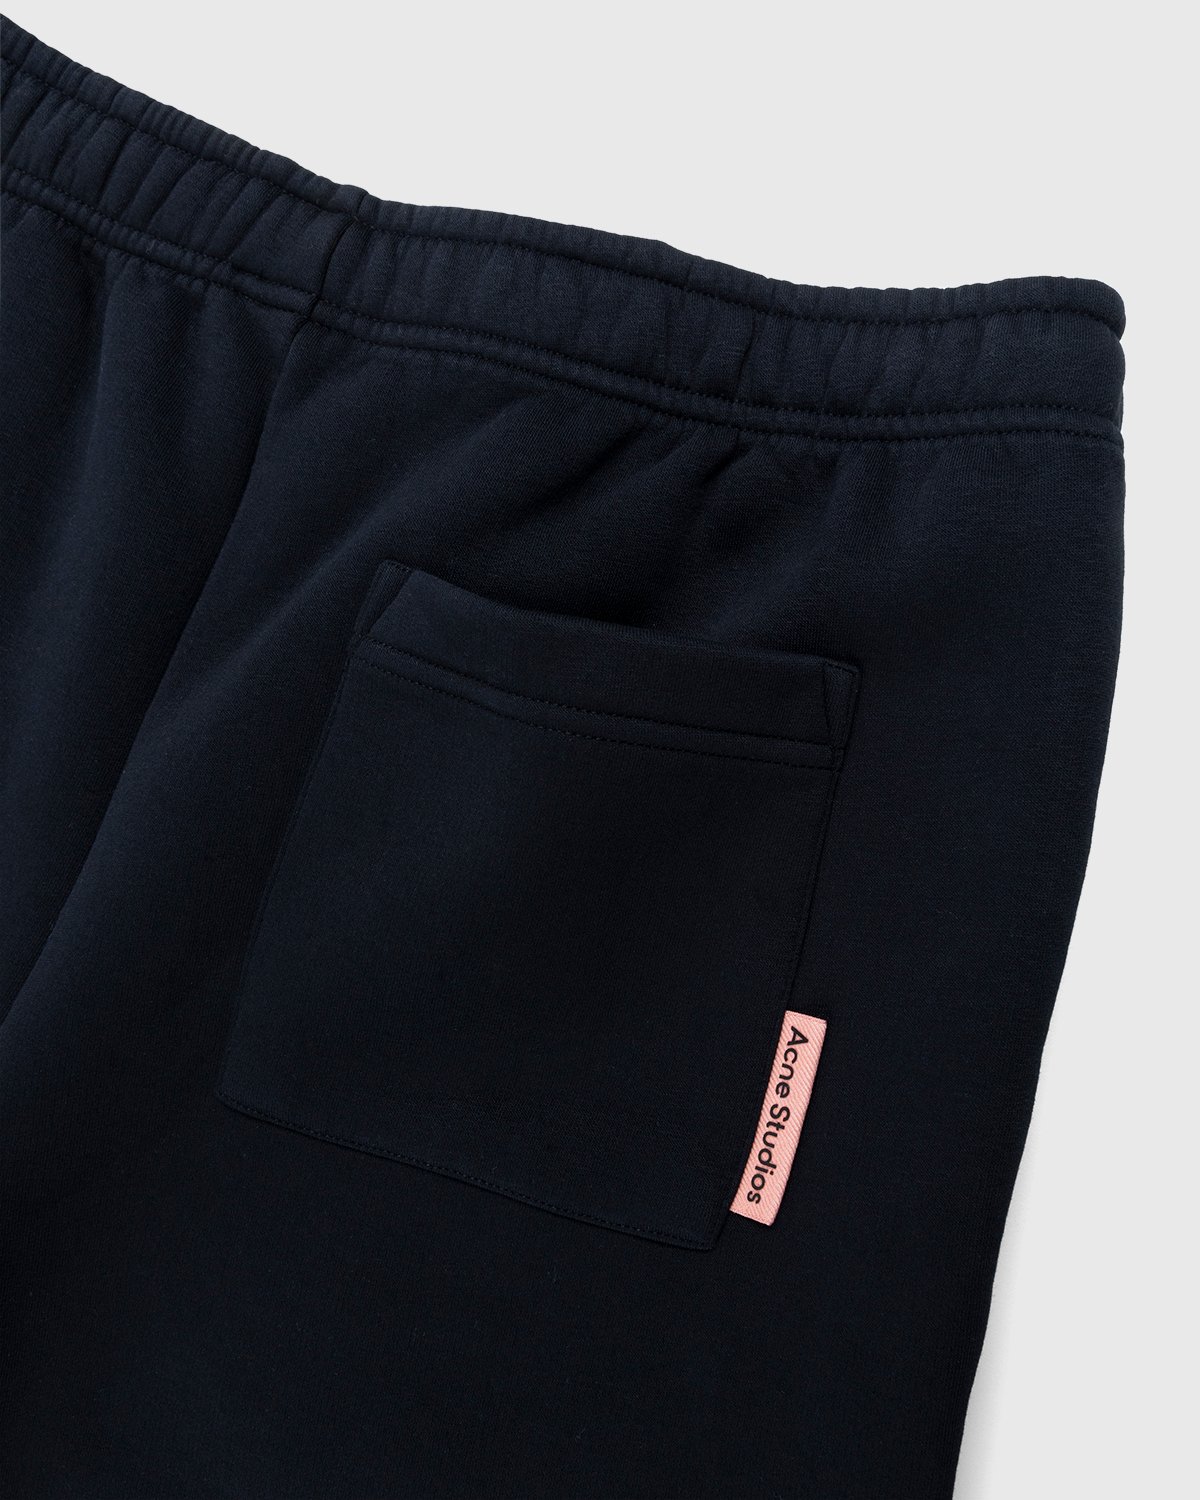 Acne Studios - Cotton Sweat Shorts Black - Clothing - Black - Image 4